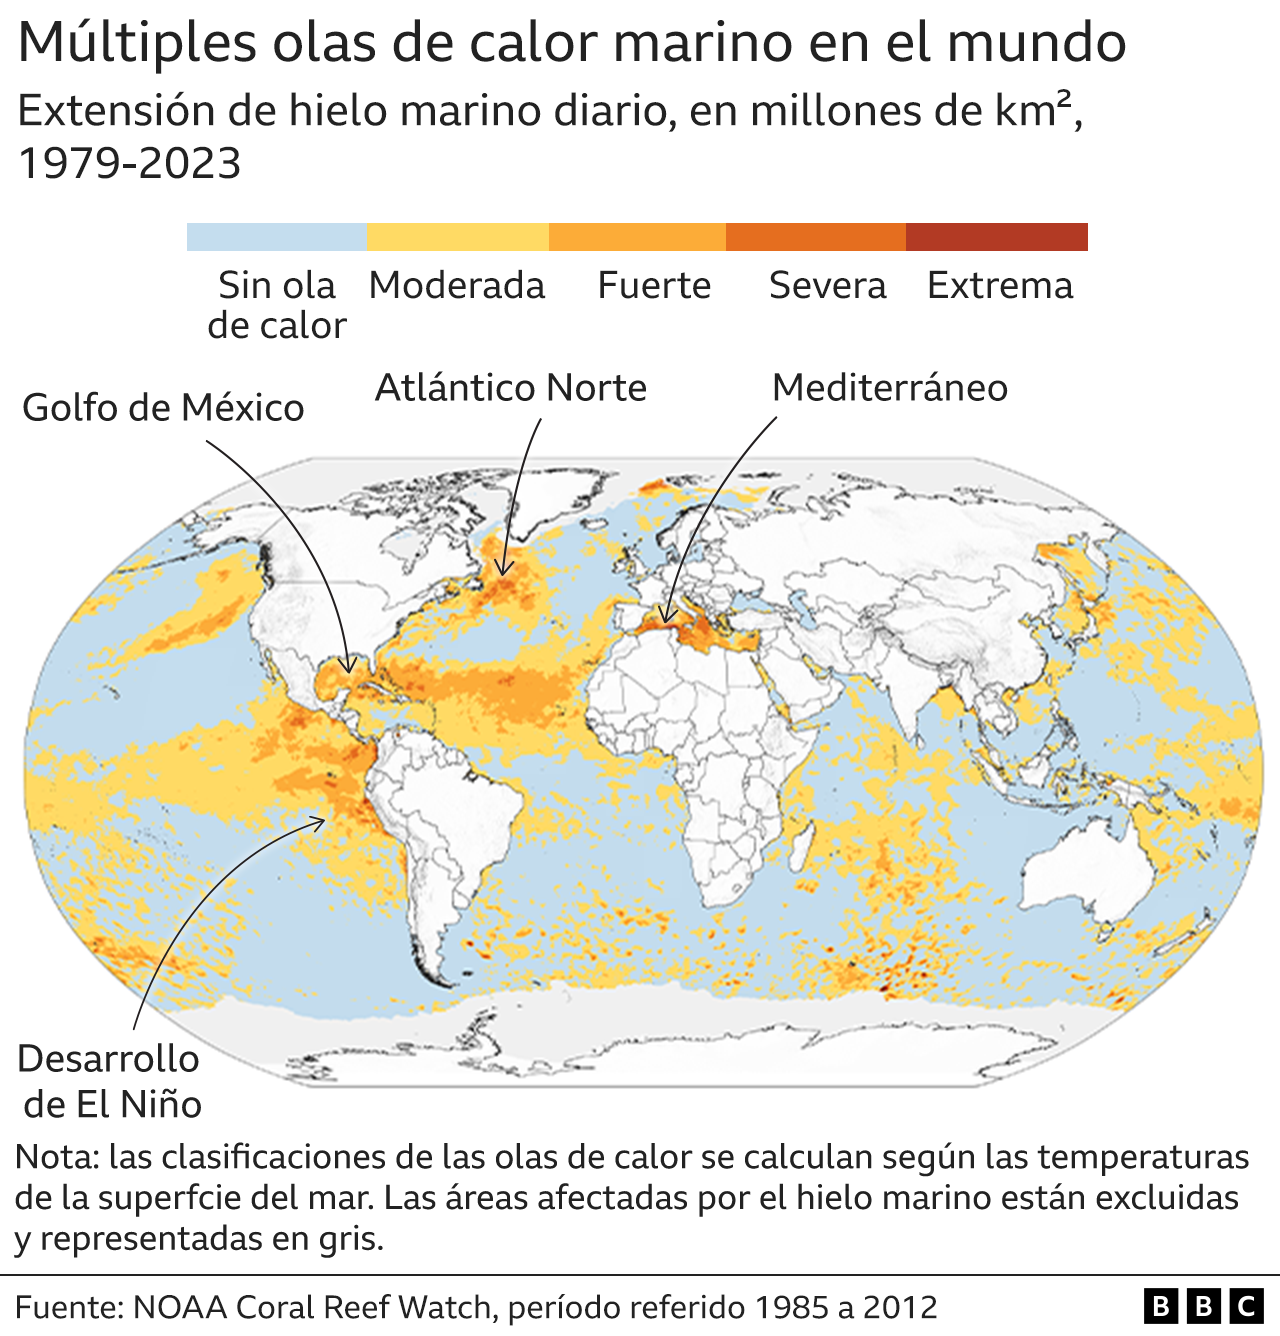 Gráfico muestra las olas de calor marino en el mundo